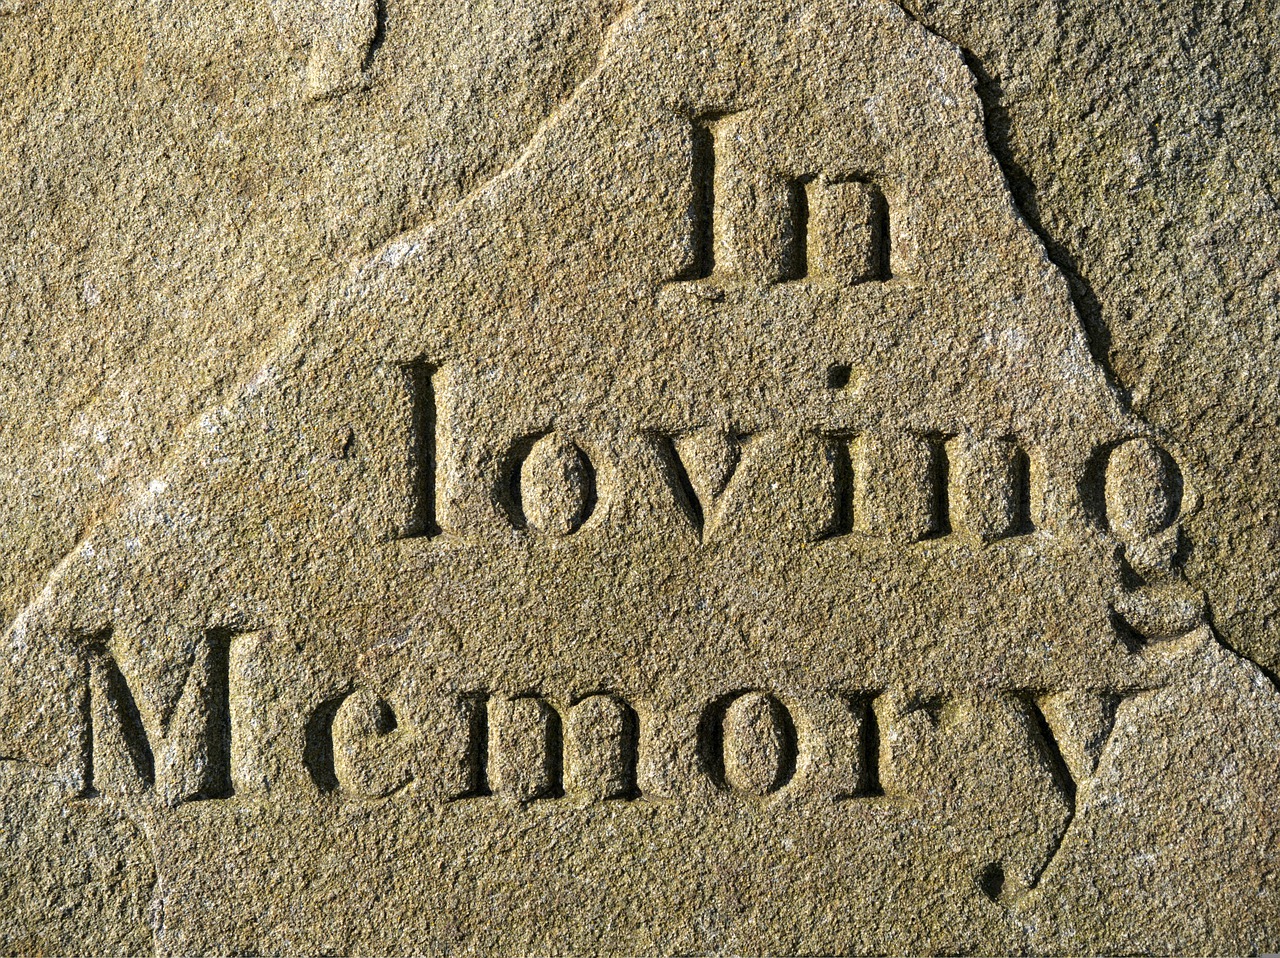 loving, memory, memorial-1207568.jpg